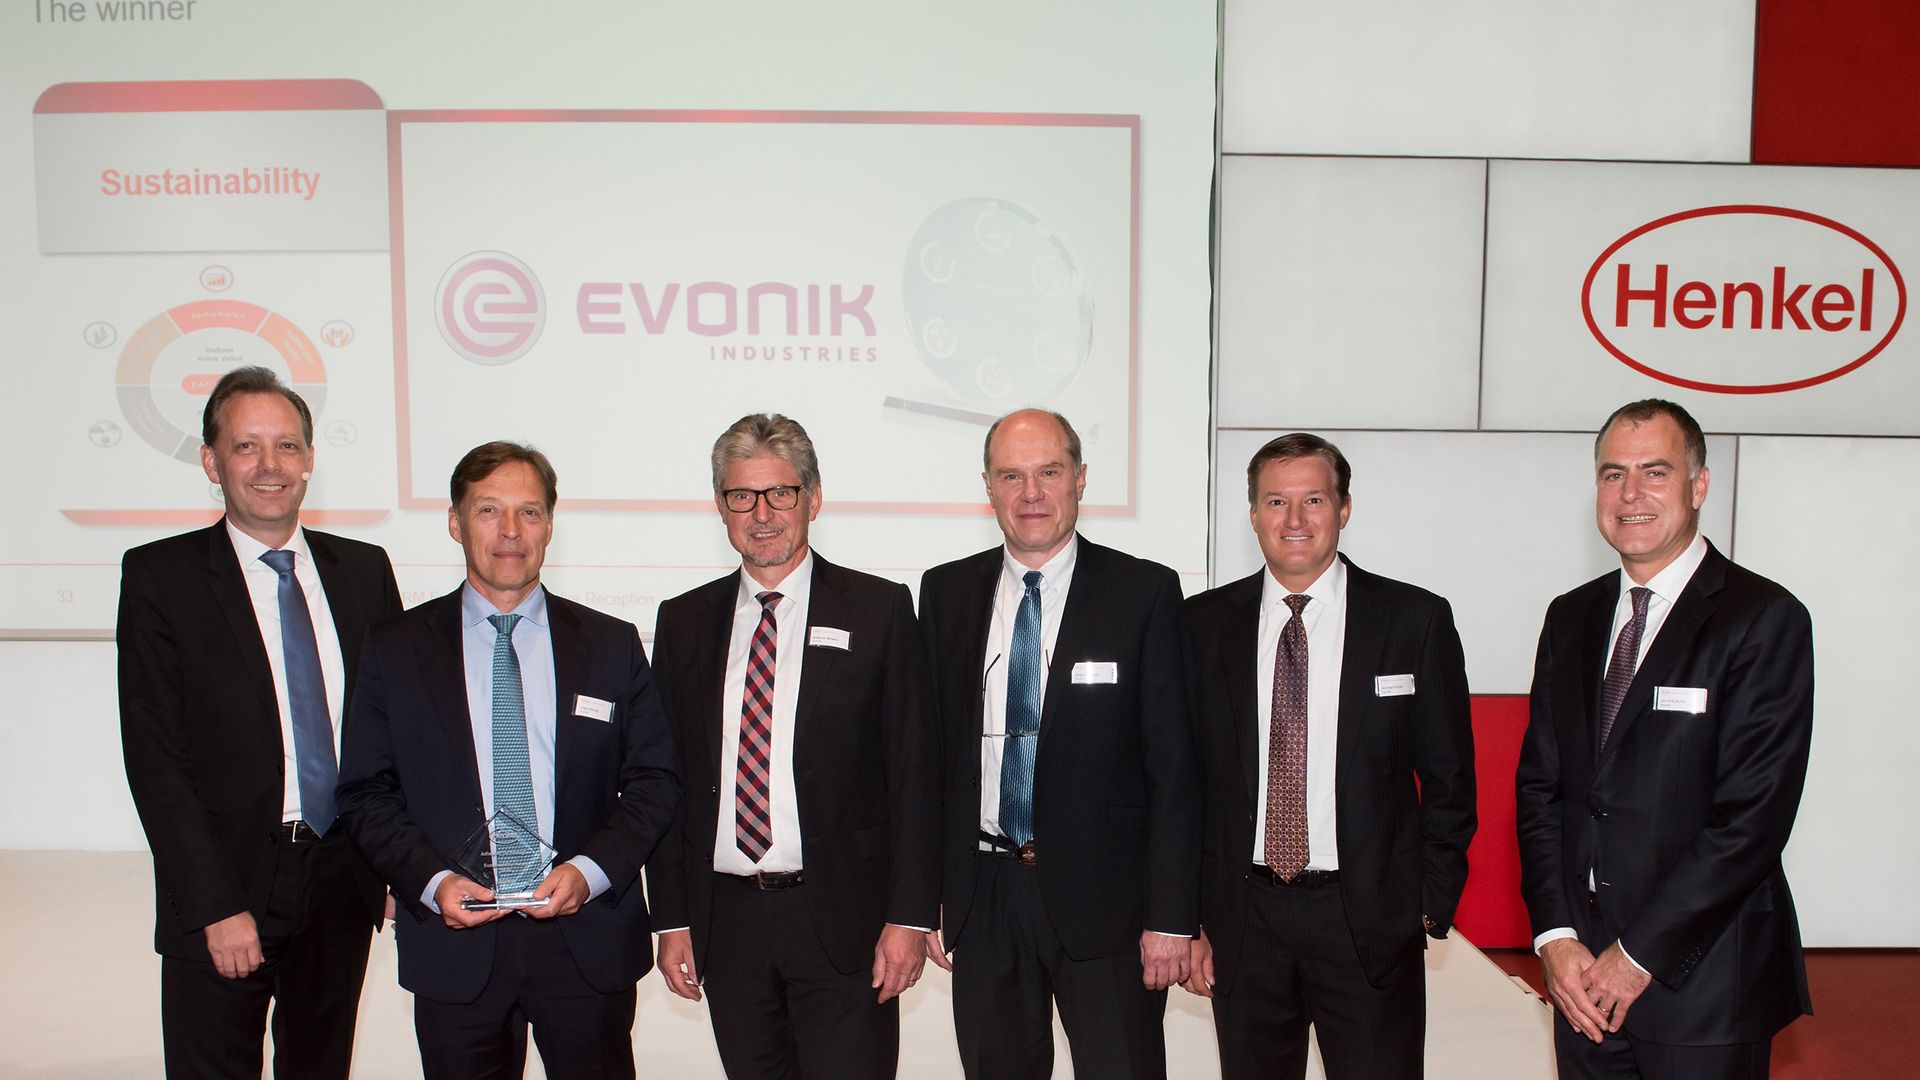 Sustainability Award: Evonik